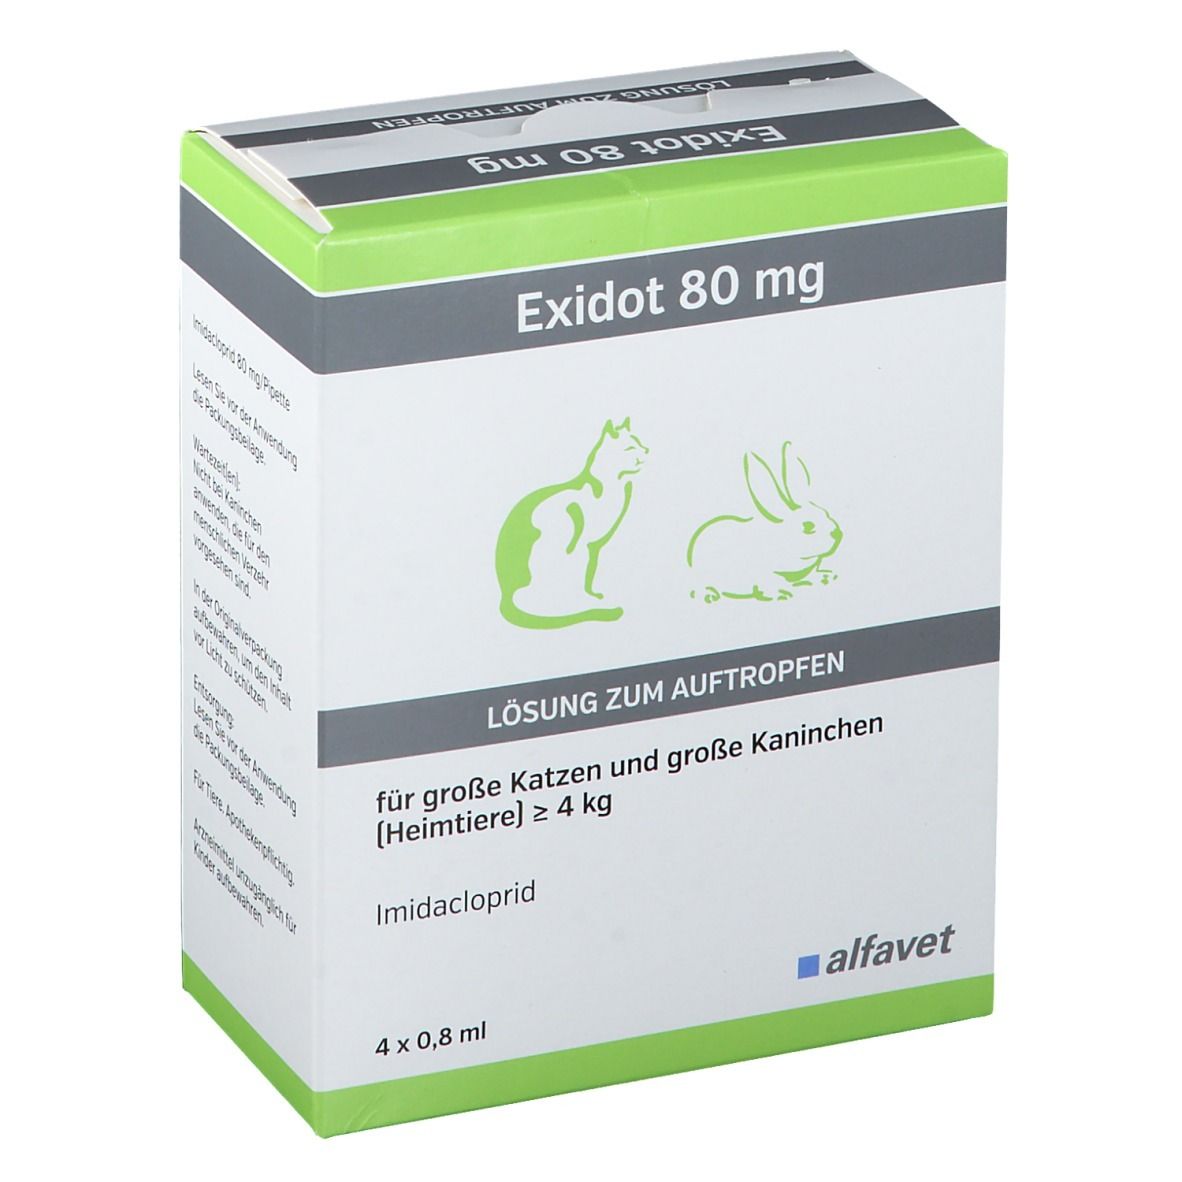 Exidot 80 mg Spot-On für große Katzen und große Kaninchen